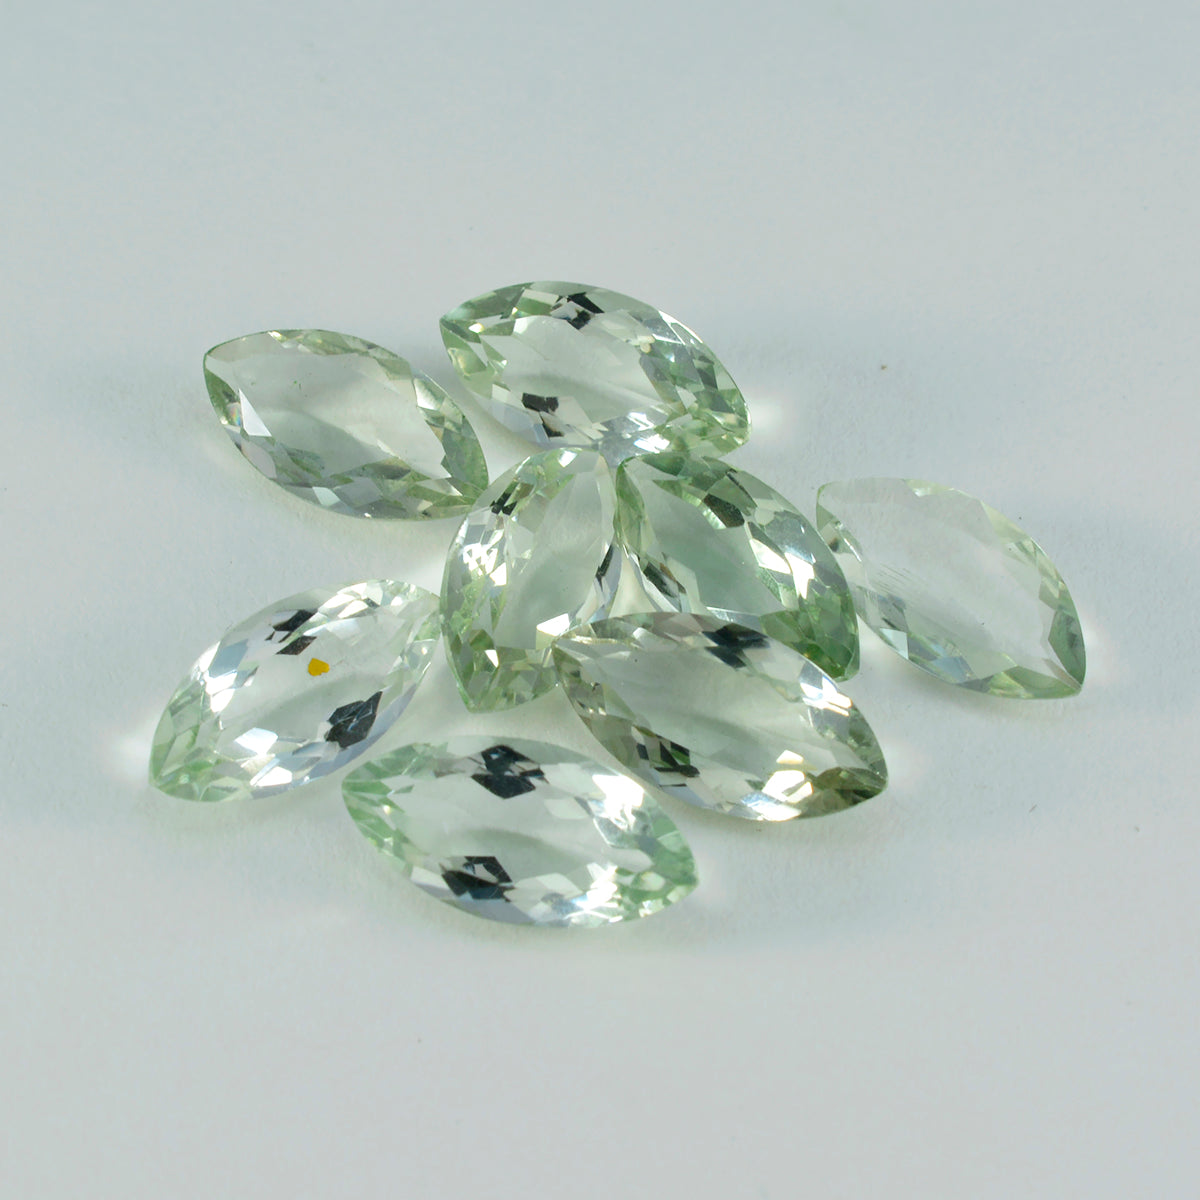 riyogems 1шт зеленый аметист ограненный 7x14 мм форма маркиза удивительный качество рассыпной драгоценный камень